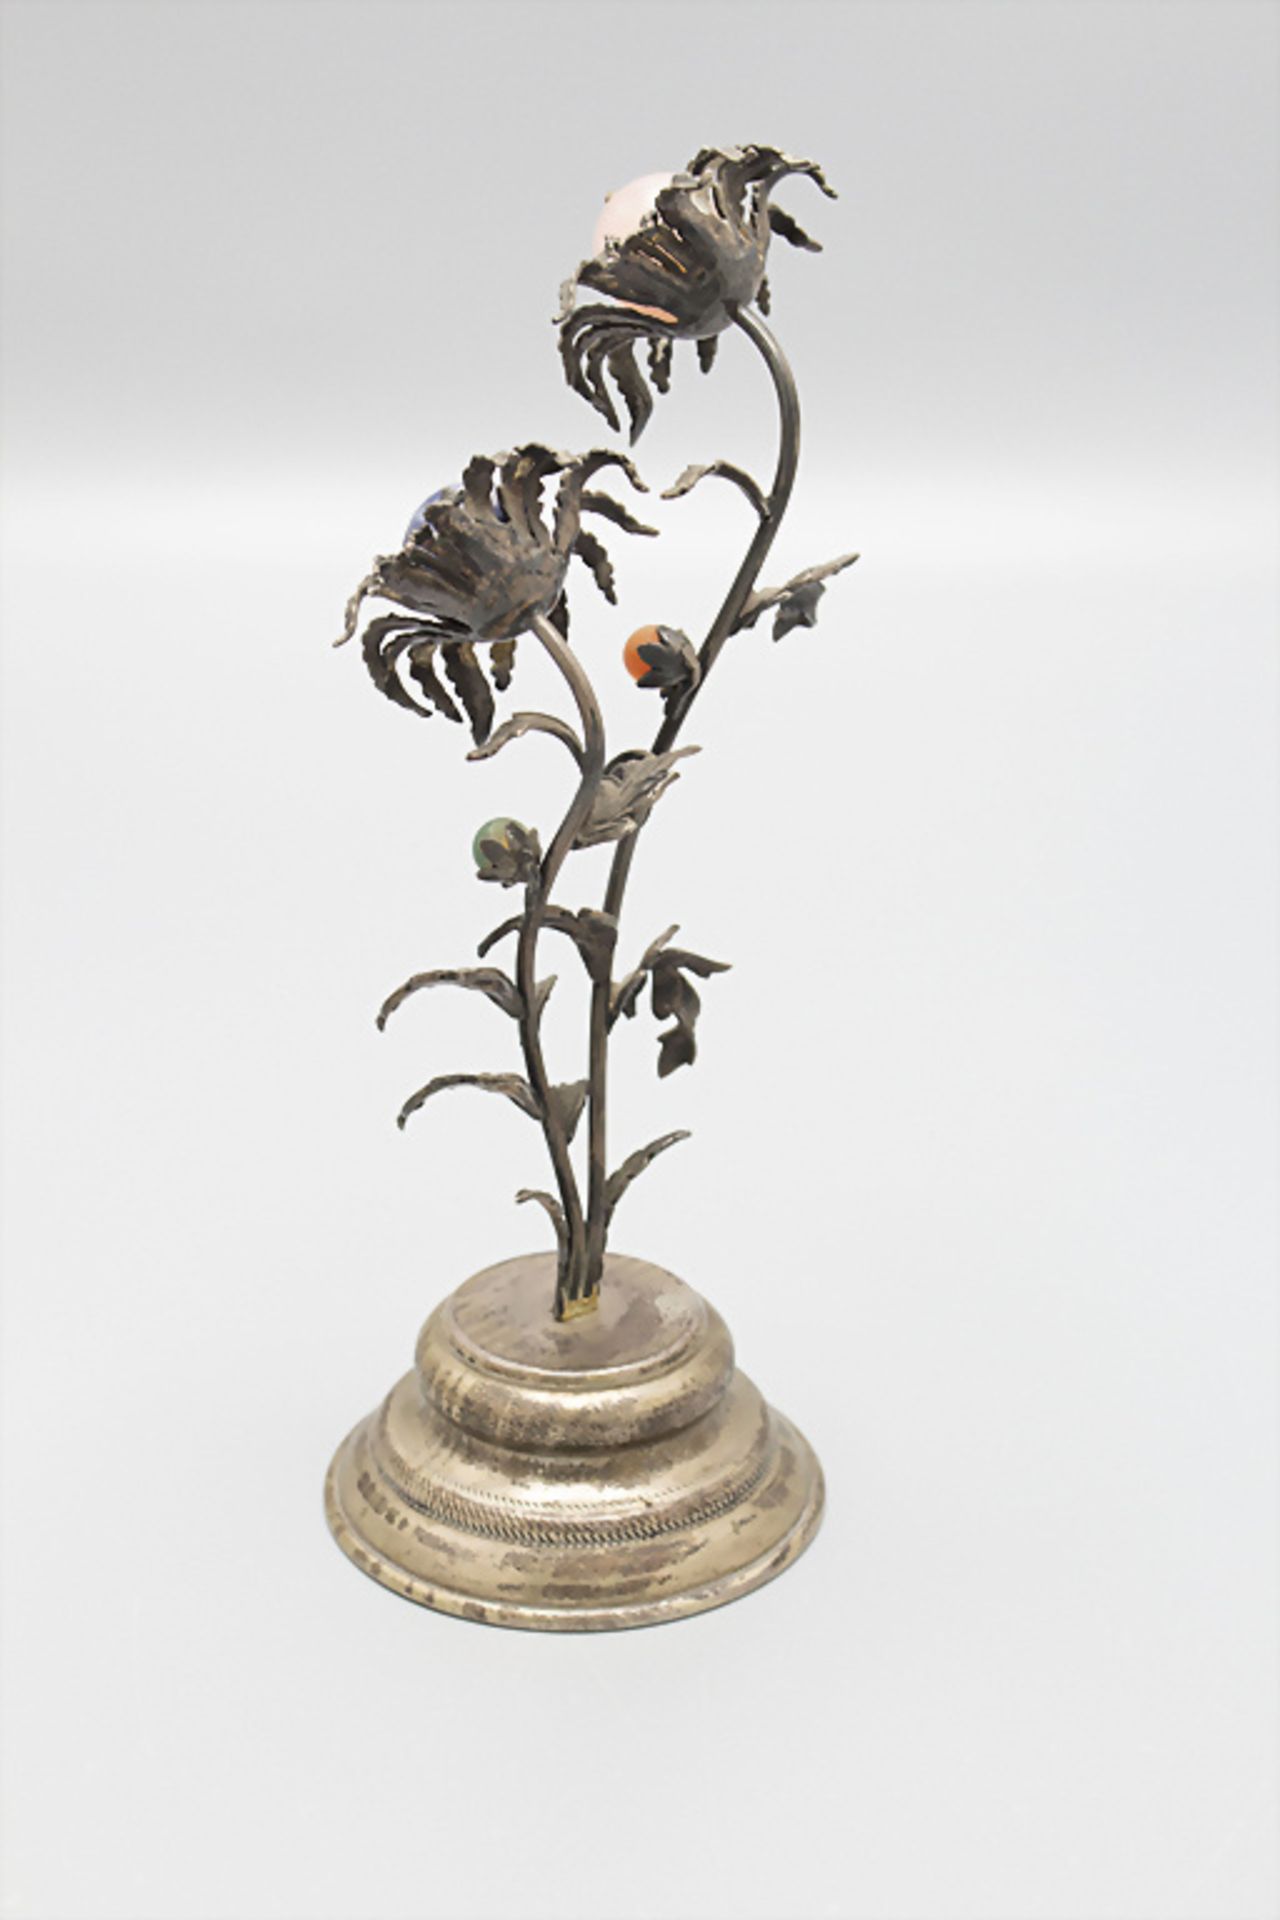 Blumen aus Silber und Quarzen als Tischdekoration / Decorative Sterling silver flowers with ... - Image 2 of 4